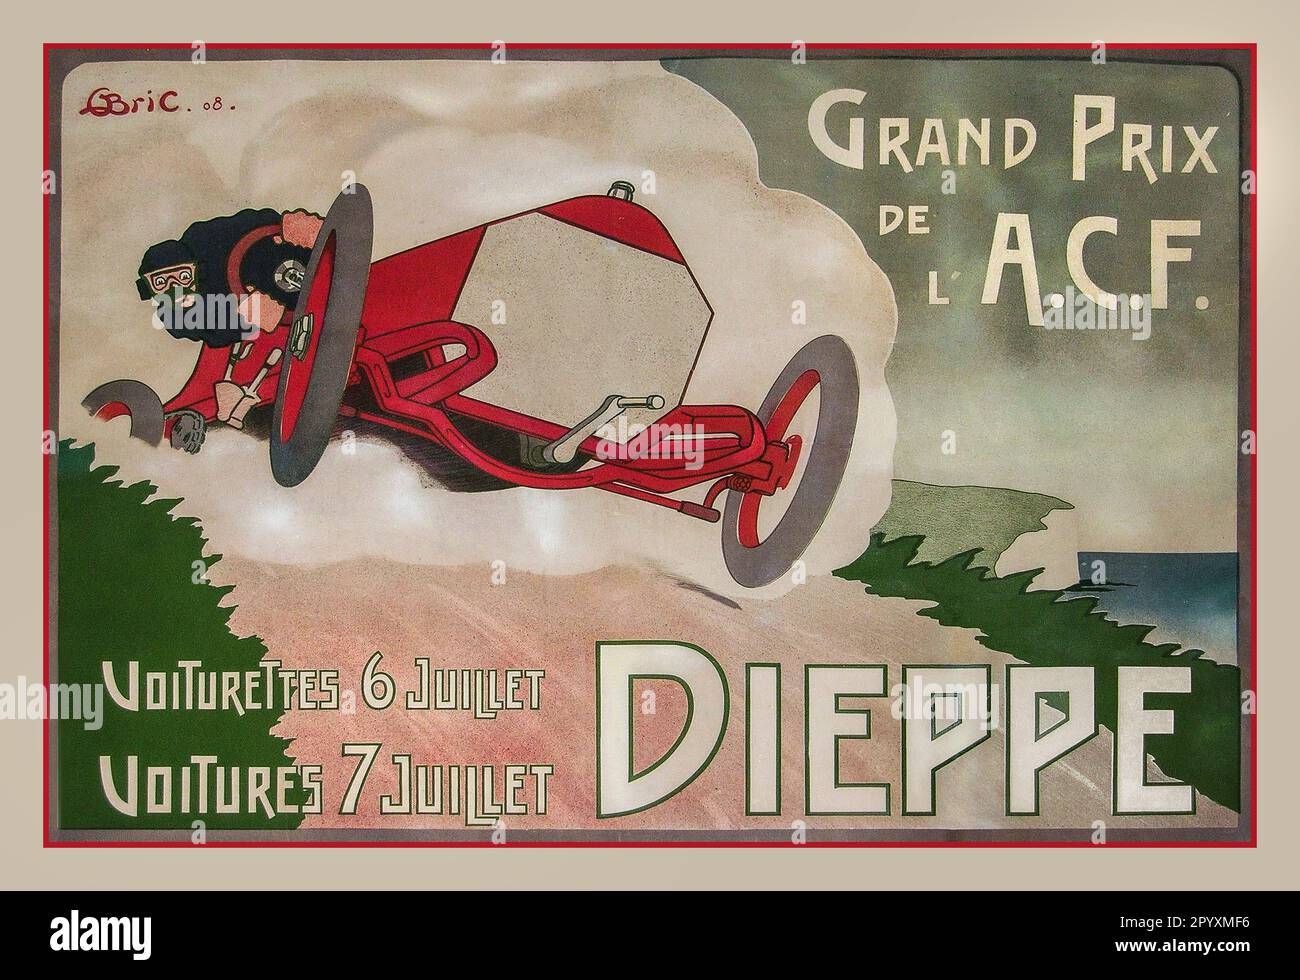 Vintage Grand Prix de l’A.C.F. 6-7 juillet 1908 DIEPPE France, affiche imprimée par les Affiches B. Chapellier-Jeune, Imp. 19 rue Beaurepaire, Paris 1908 Géo Bric artiste Banque D'Images